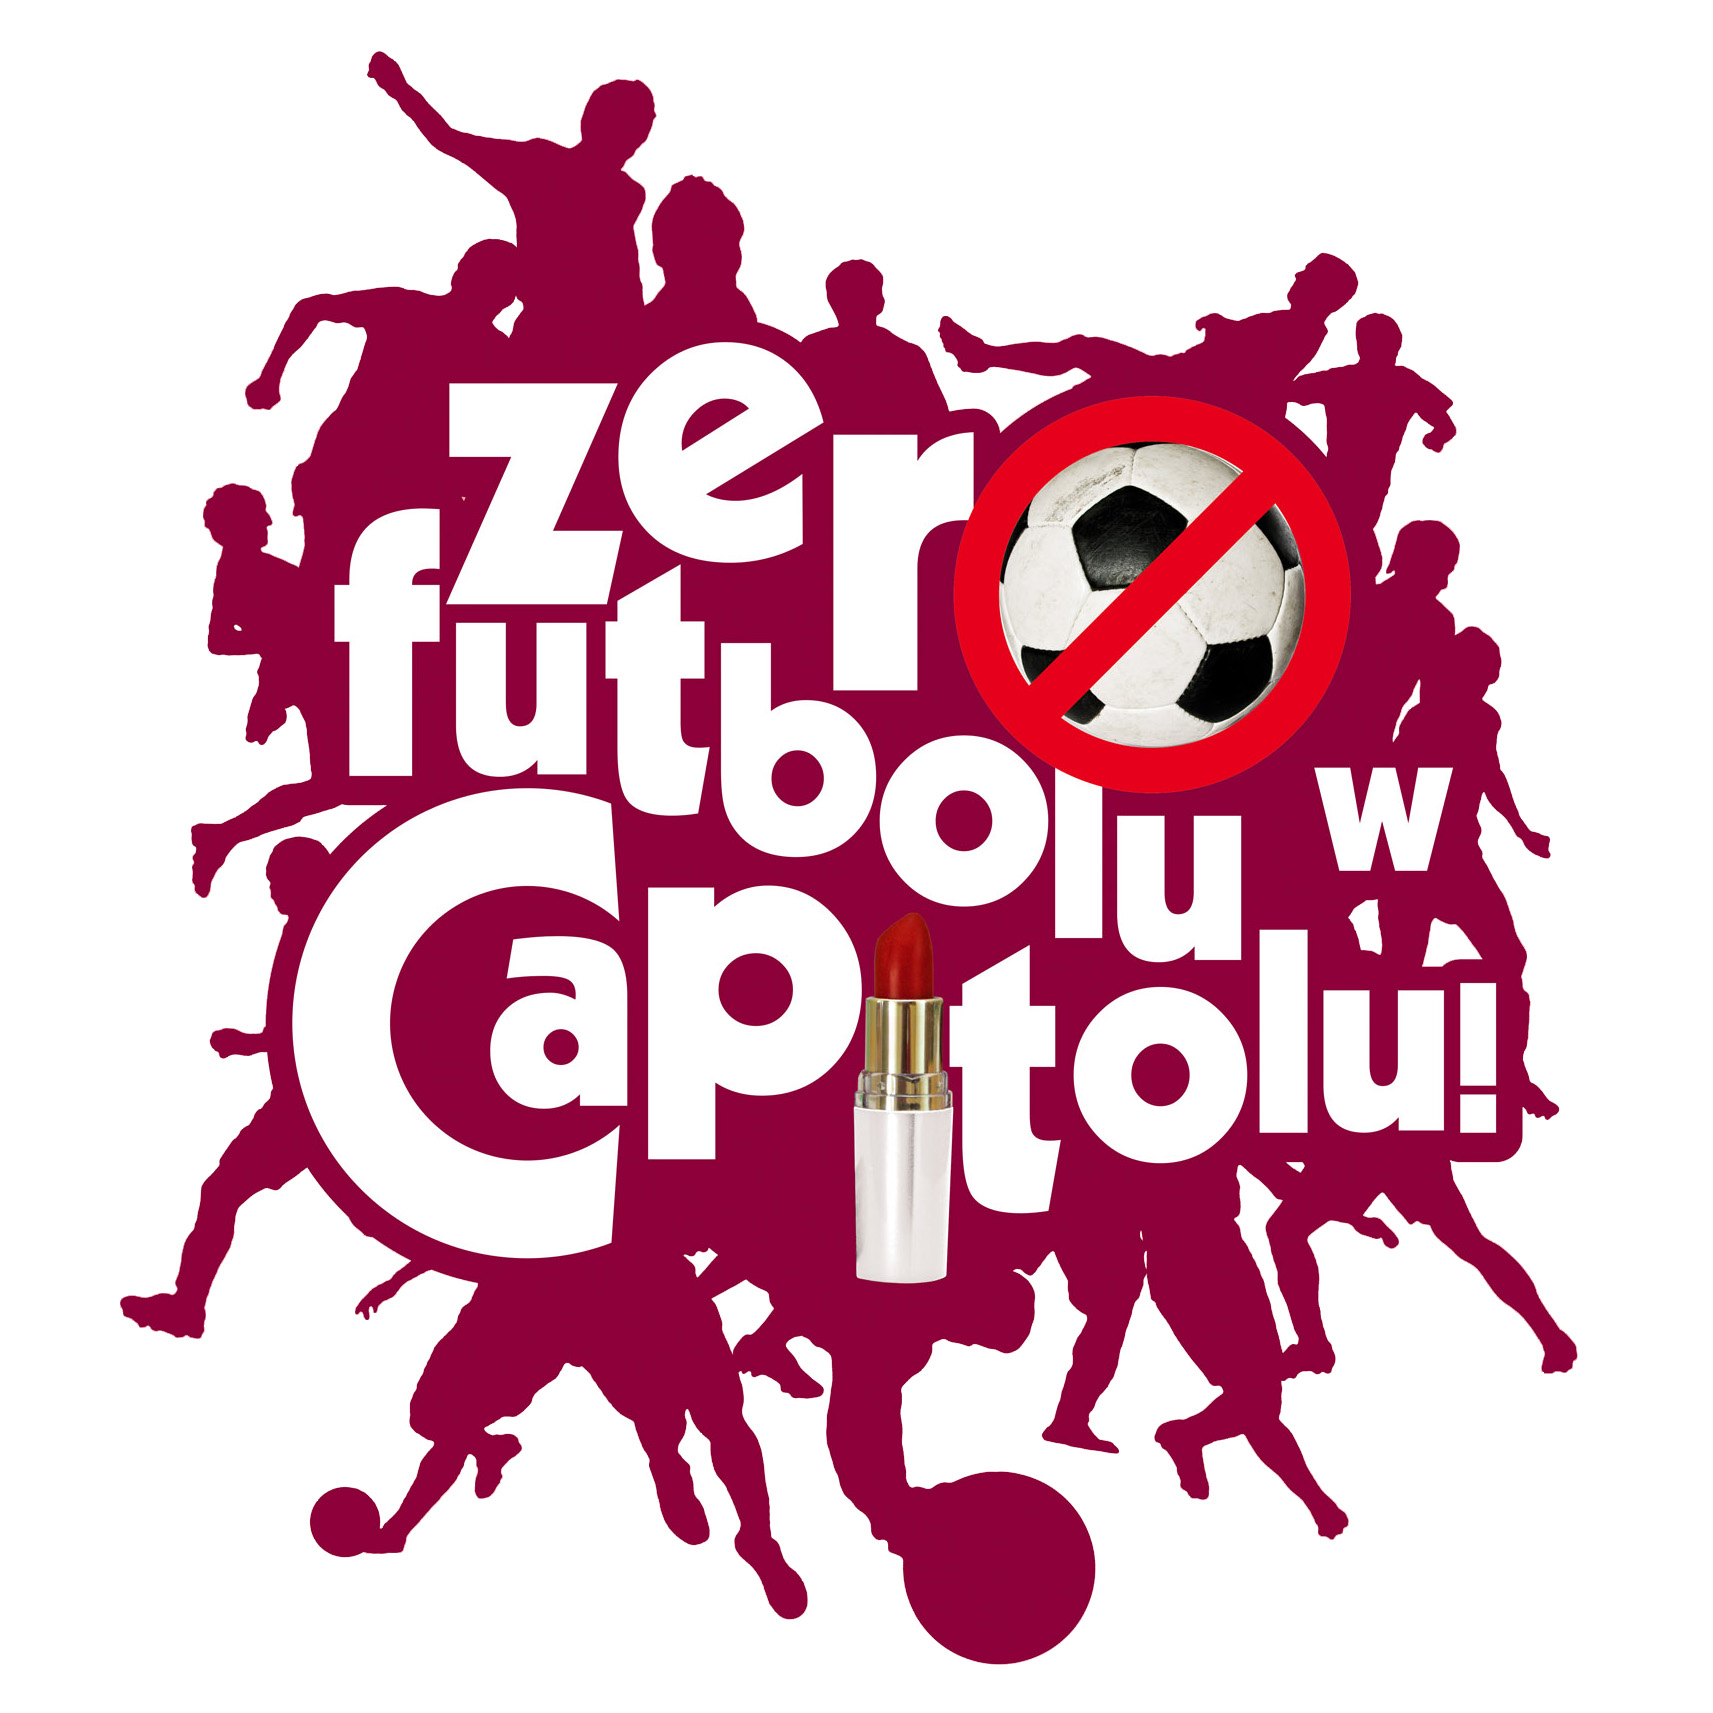 Zero Futbolu w Capitolu - Czas z kobiet w Teatrze Capitol